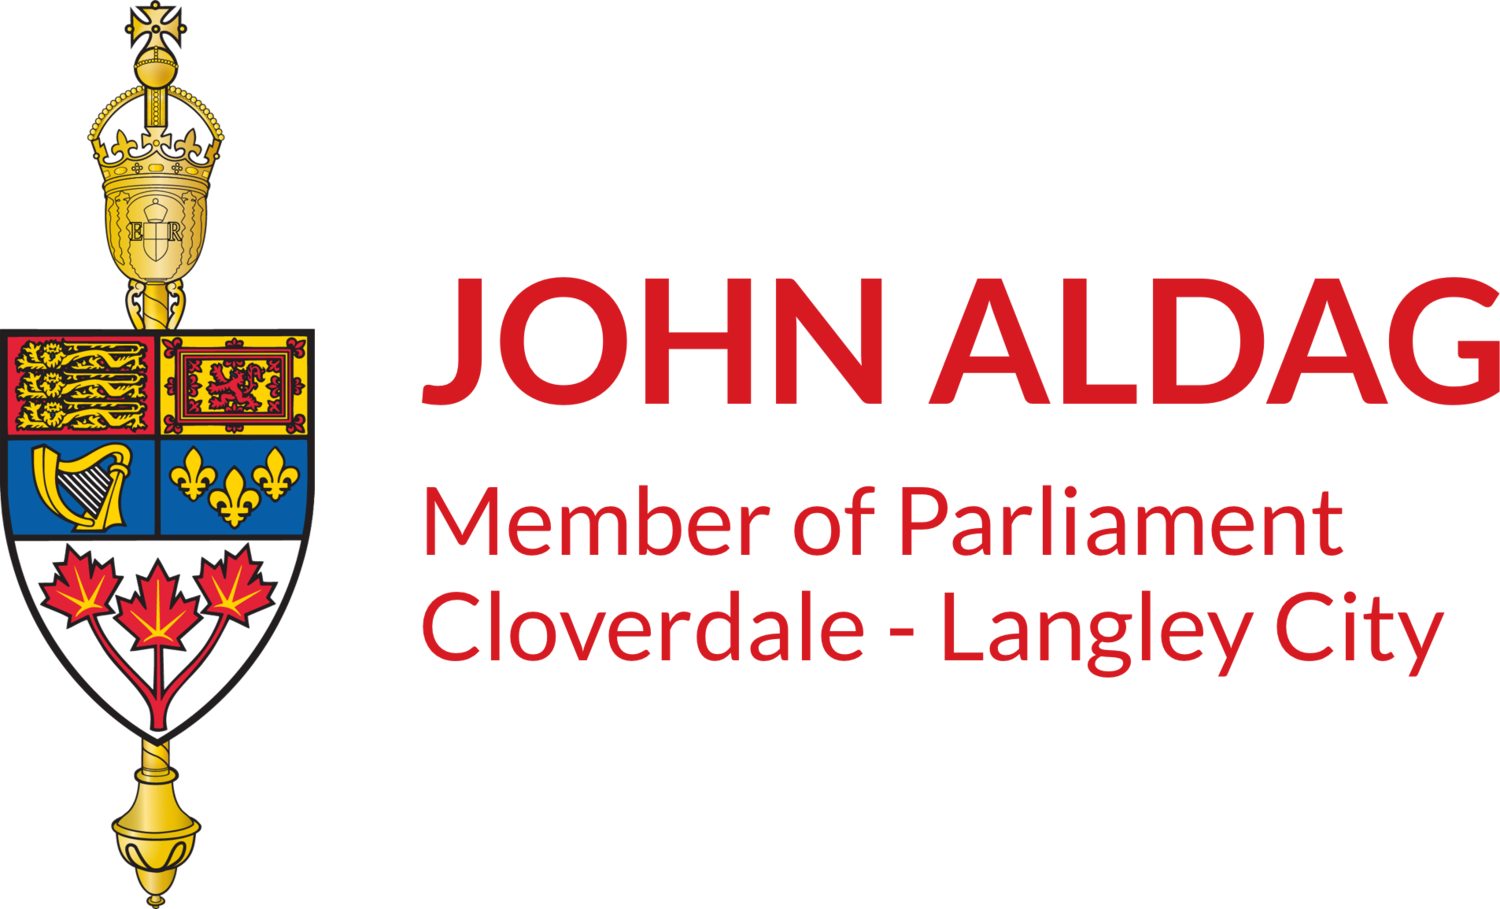 John Aldag, Member of Parliament